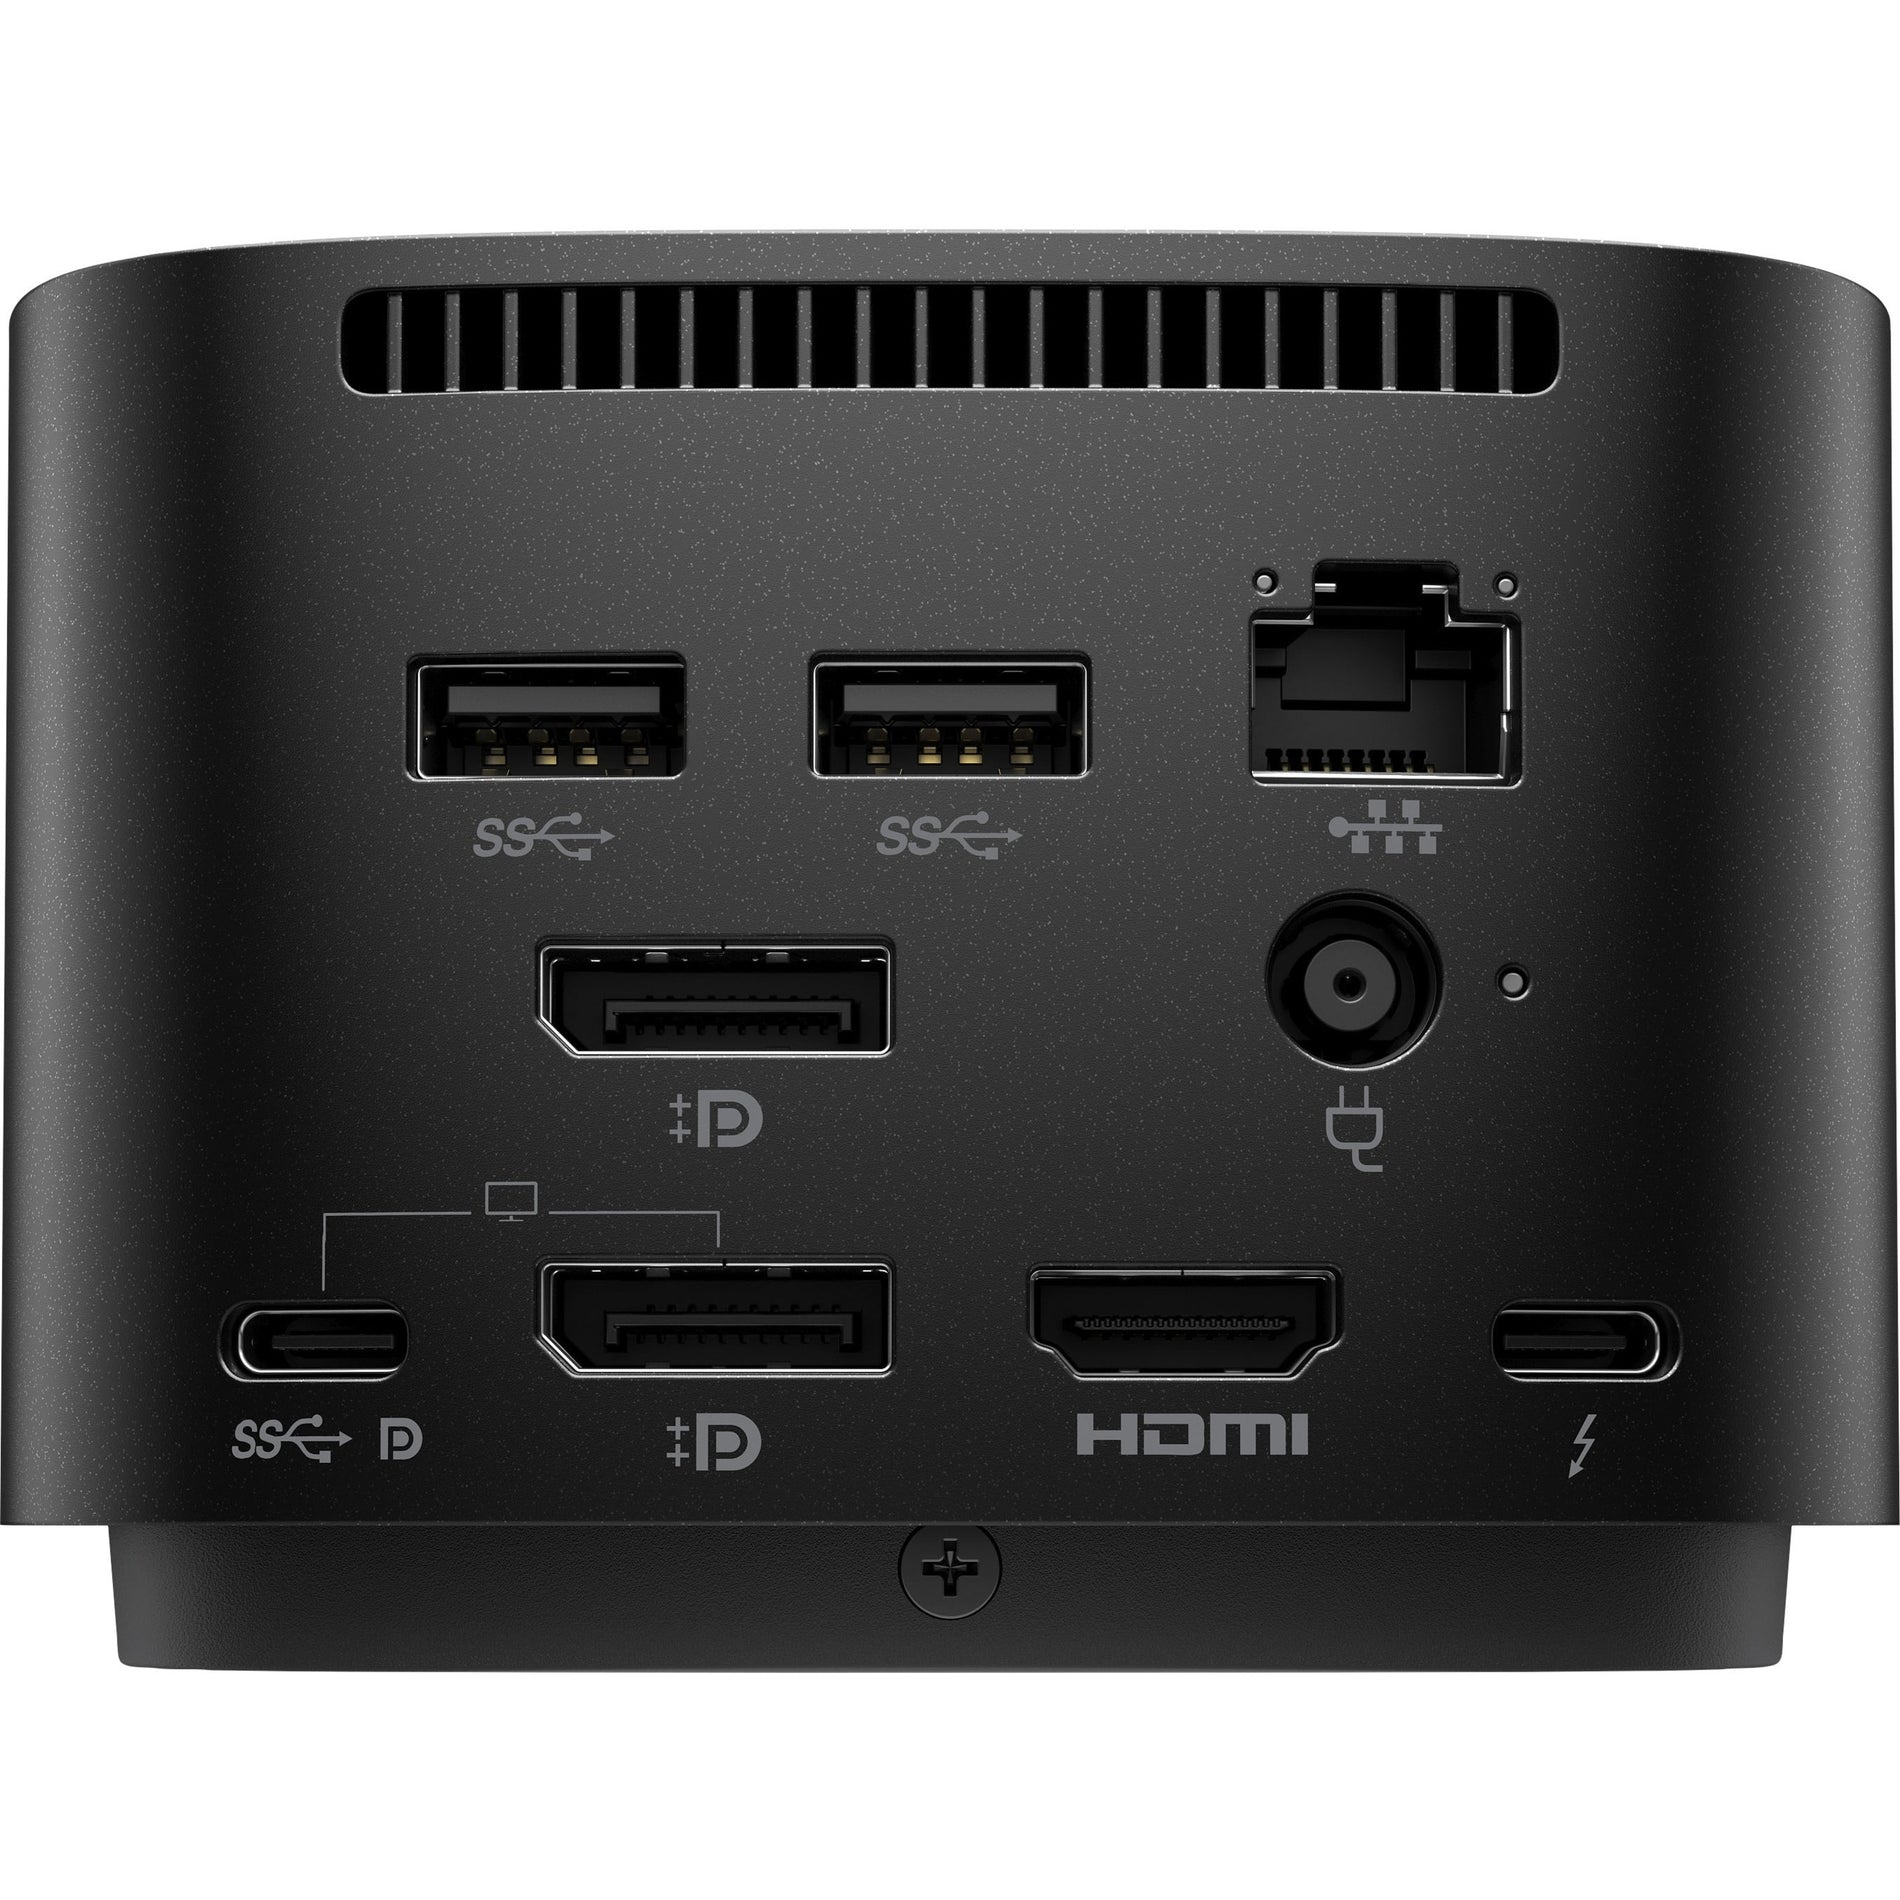 HP サンダーボルト ドック 120W G4、4K ディスプレイ、USB-C、HDMI、イーサネット